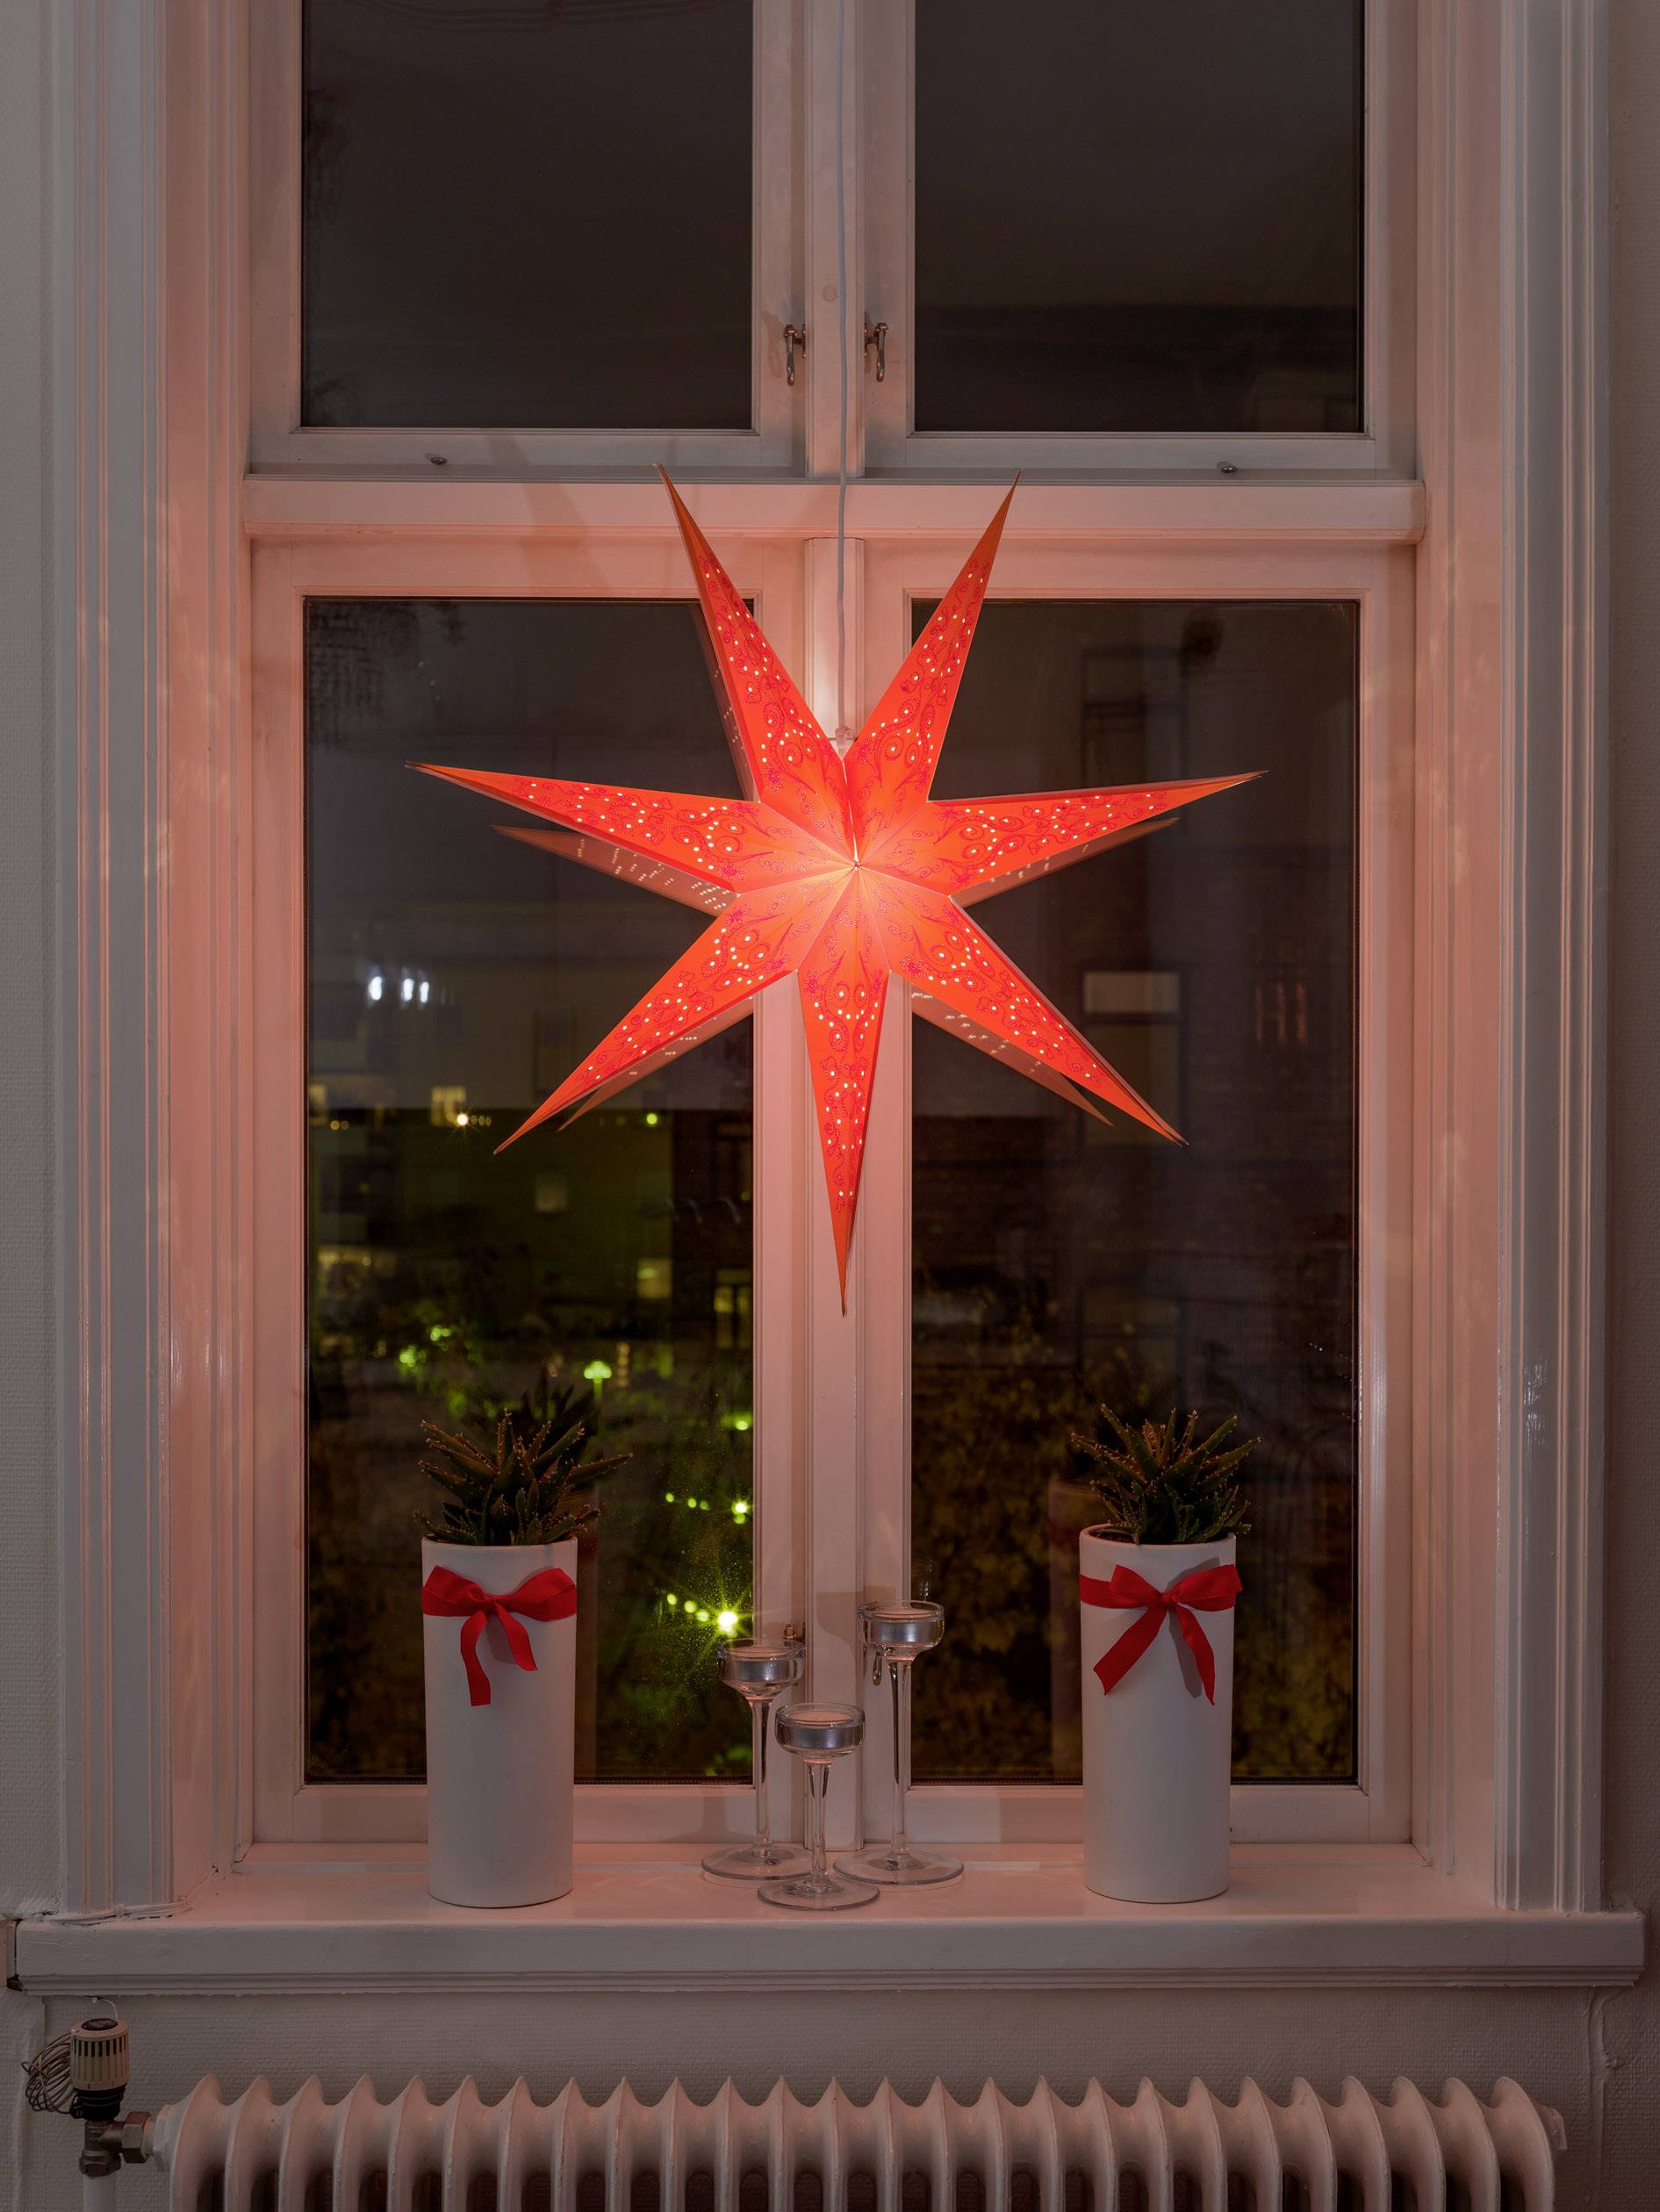 KONSTSMIDE 2982-185 Weihnachtsstern Glühlampe, LED Orange bestickt, mit ausgestanzten Motiven